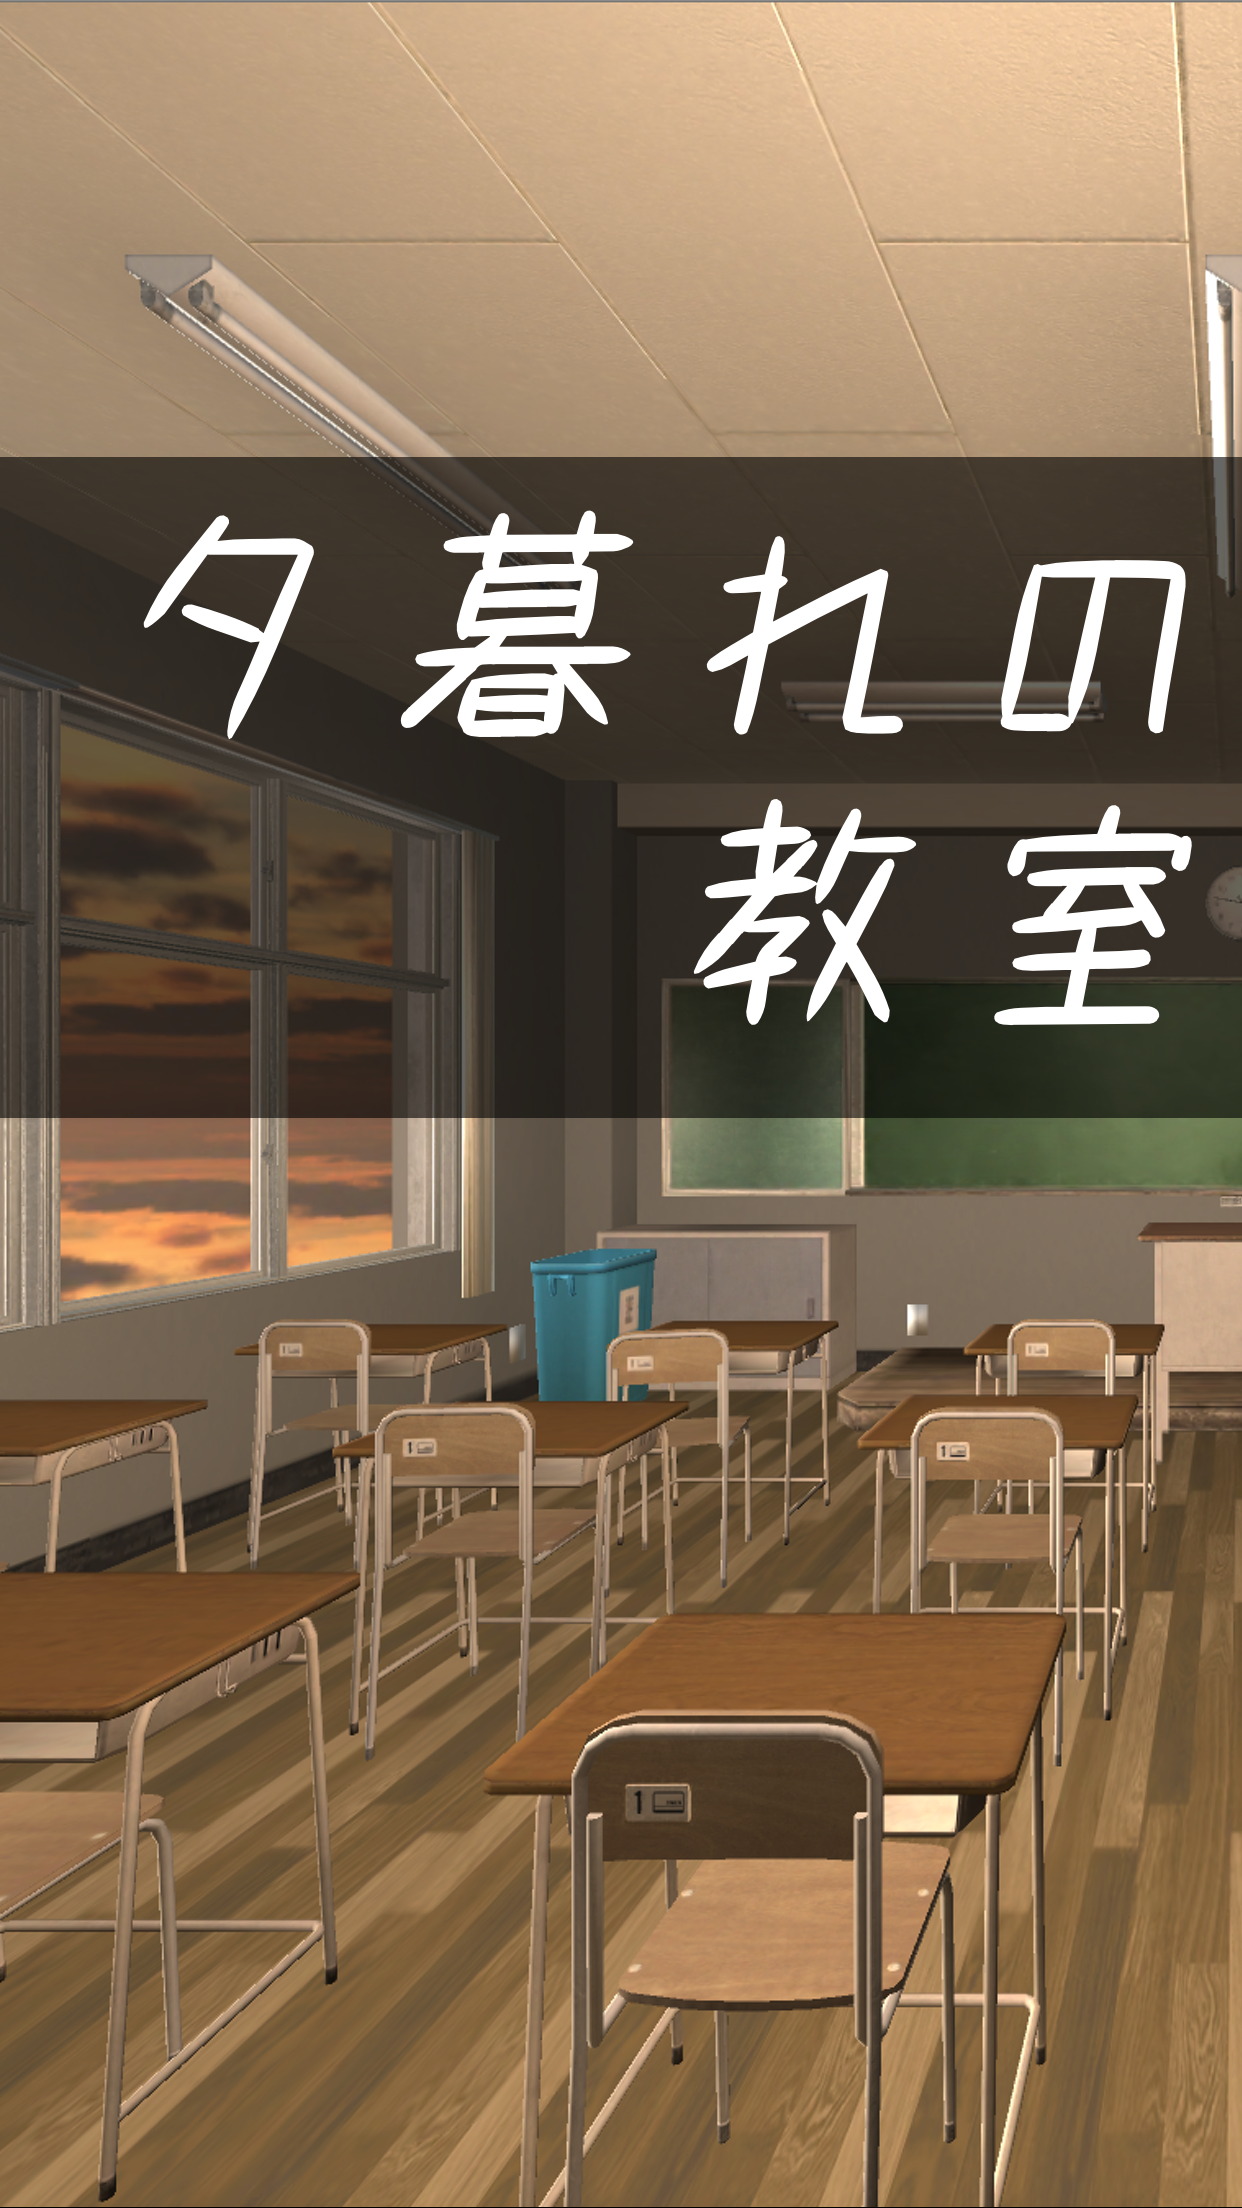 Screenshot 1 of Permainan melarikan diri Melarikan diri dari bilik darjah pada waktu senja 1.0.0